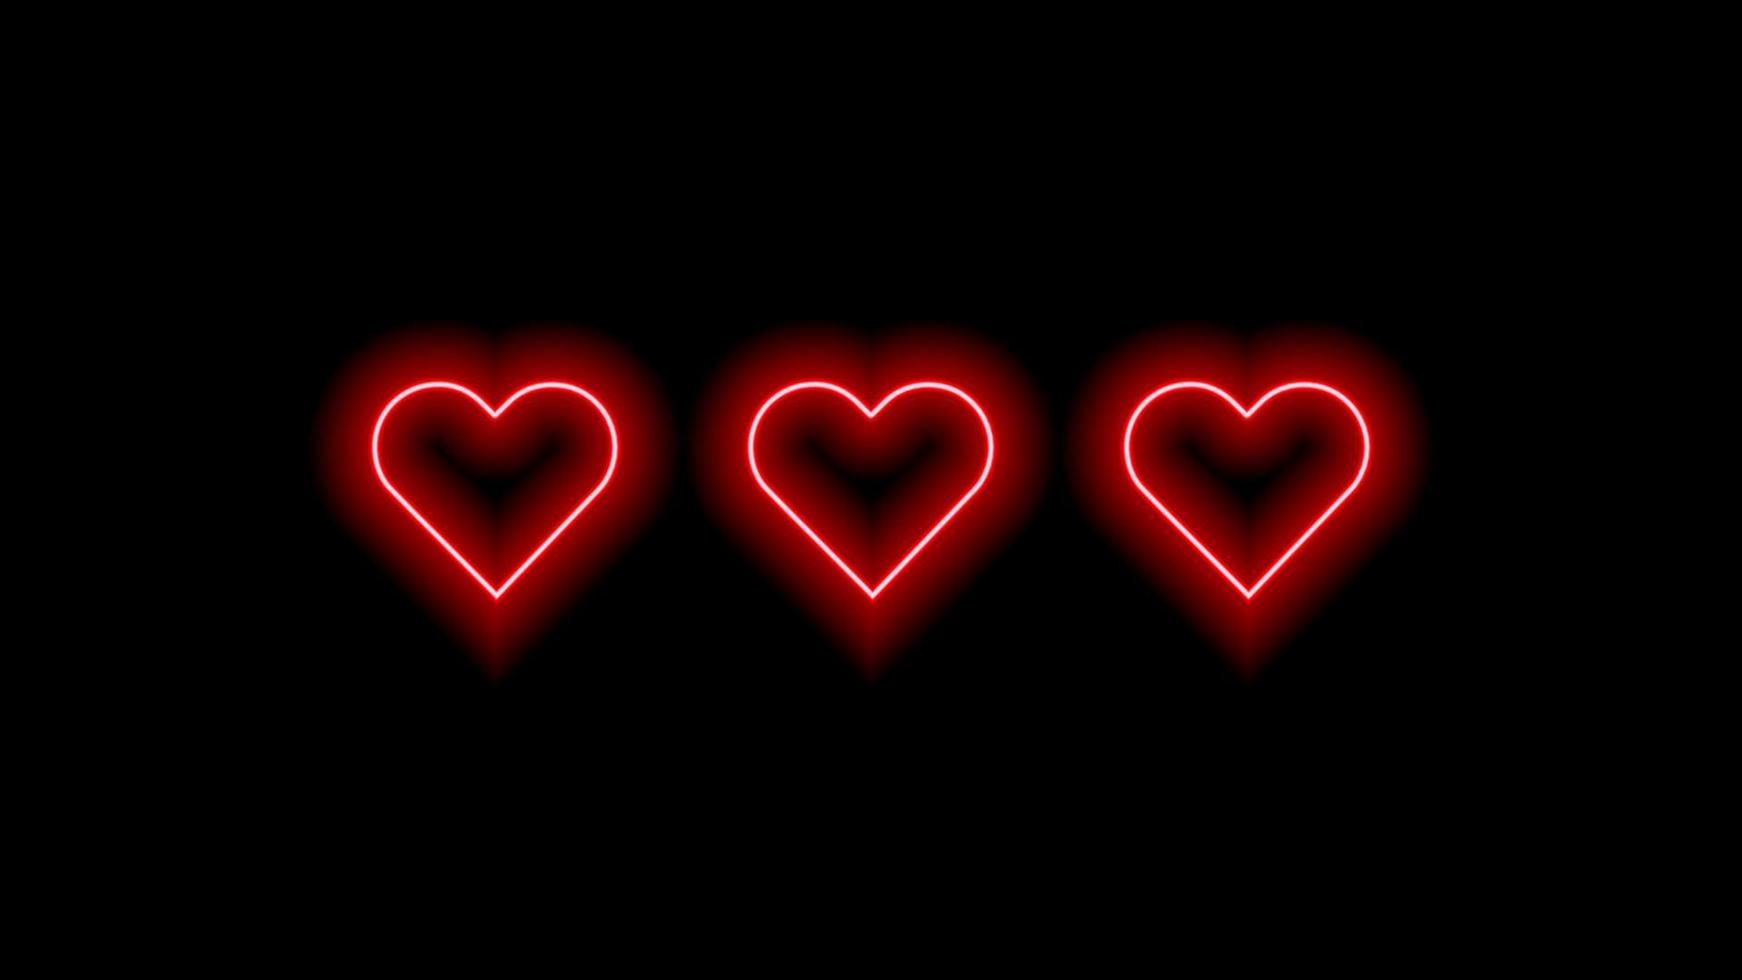 drie rode neonharten op zwart. lichtgevende elementen voor uw ontwerp. vector